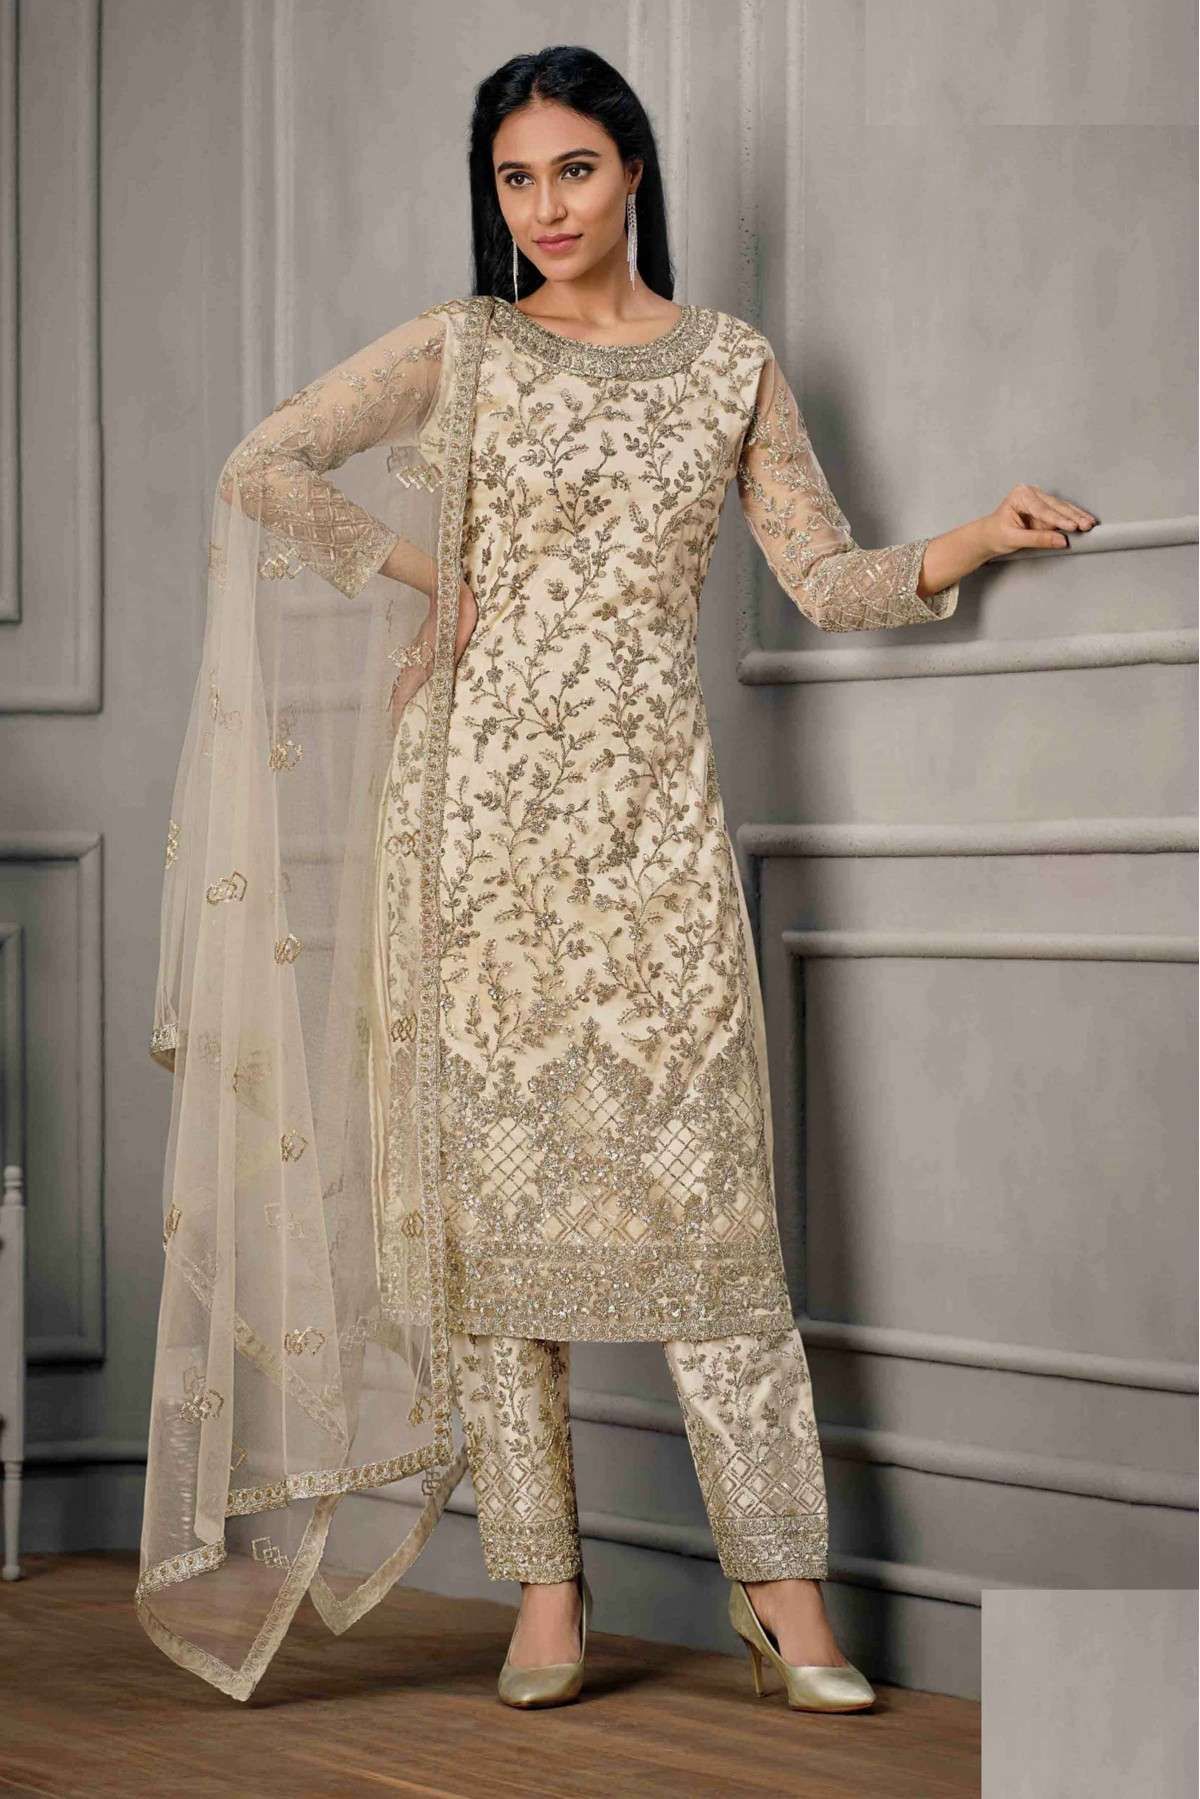 Punjabi Suits for Wedding Season - The Pink Patola